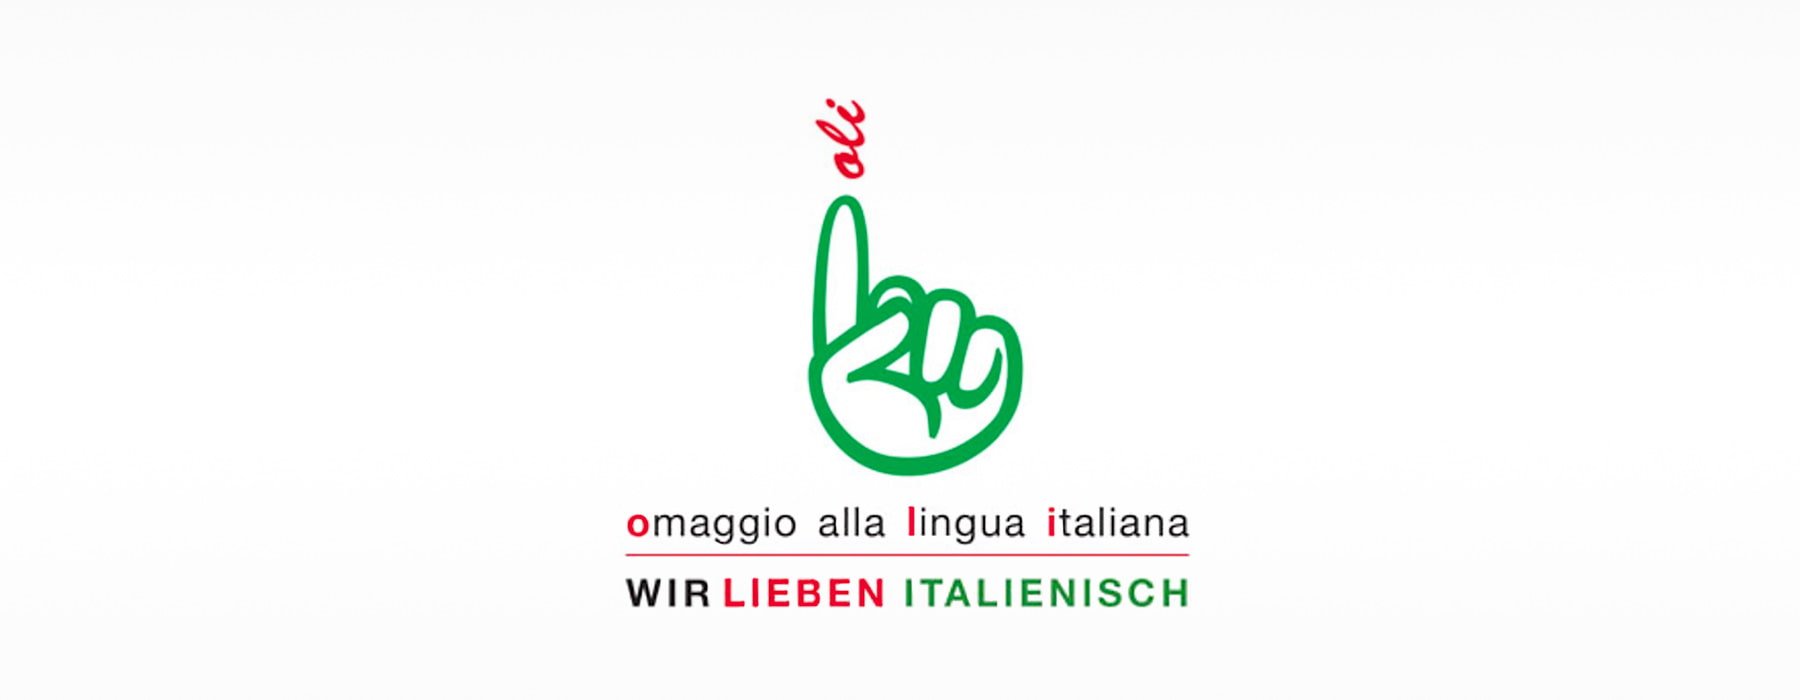 Vereinigung Deutsch-Italienischer Kultur-Gesellschaften e.V. (VDIG) - Oli-Projekt